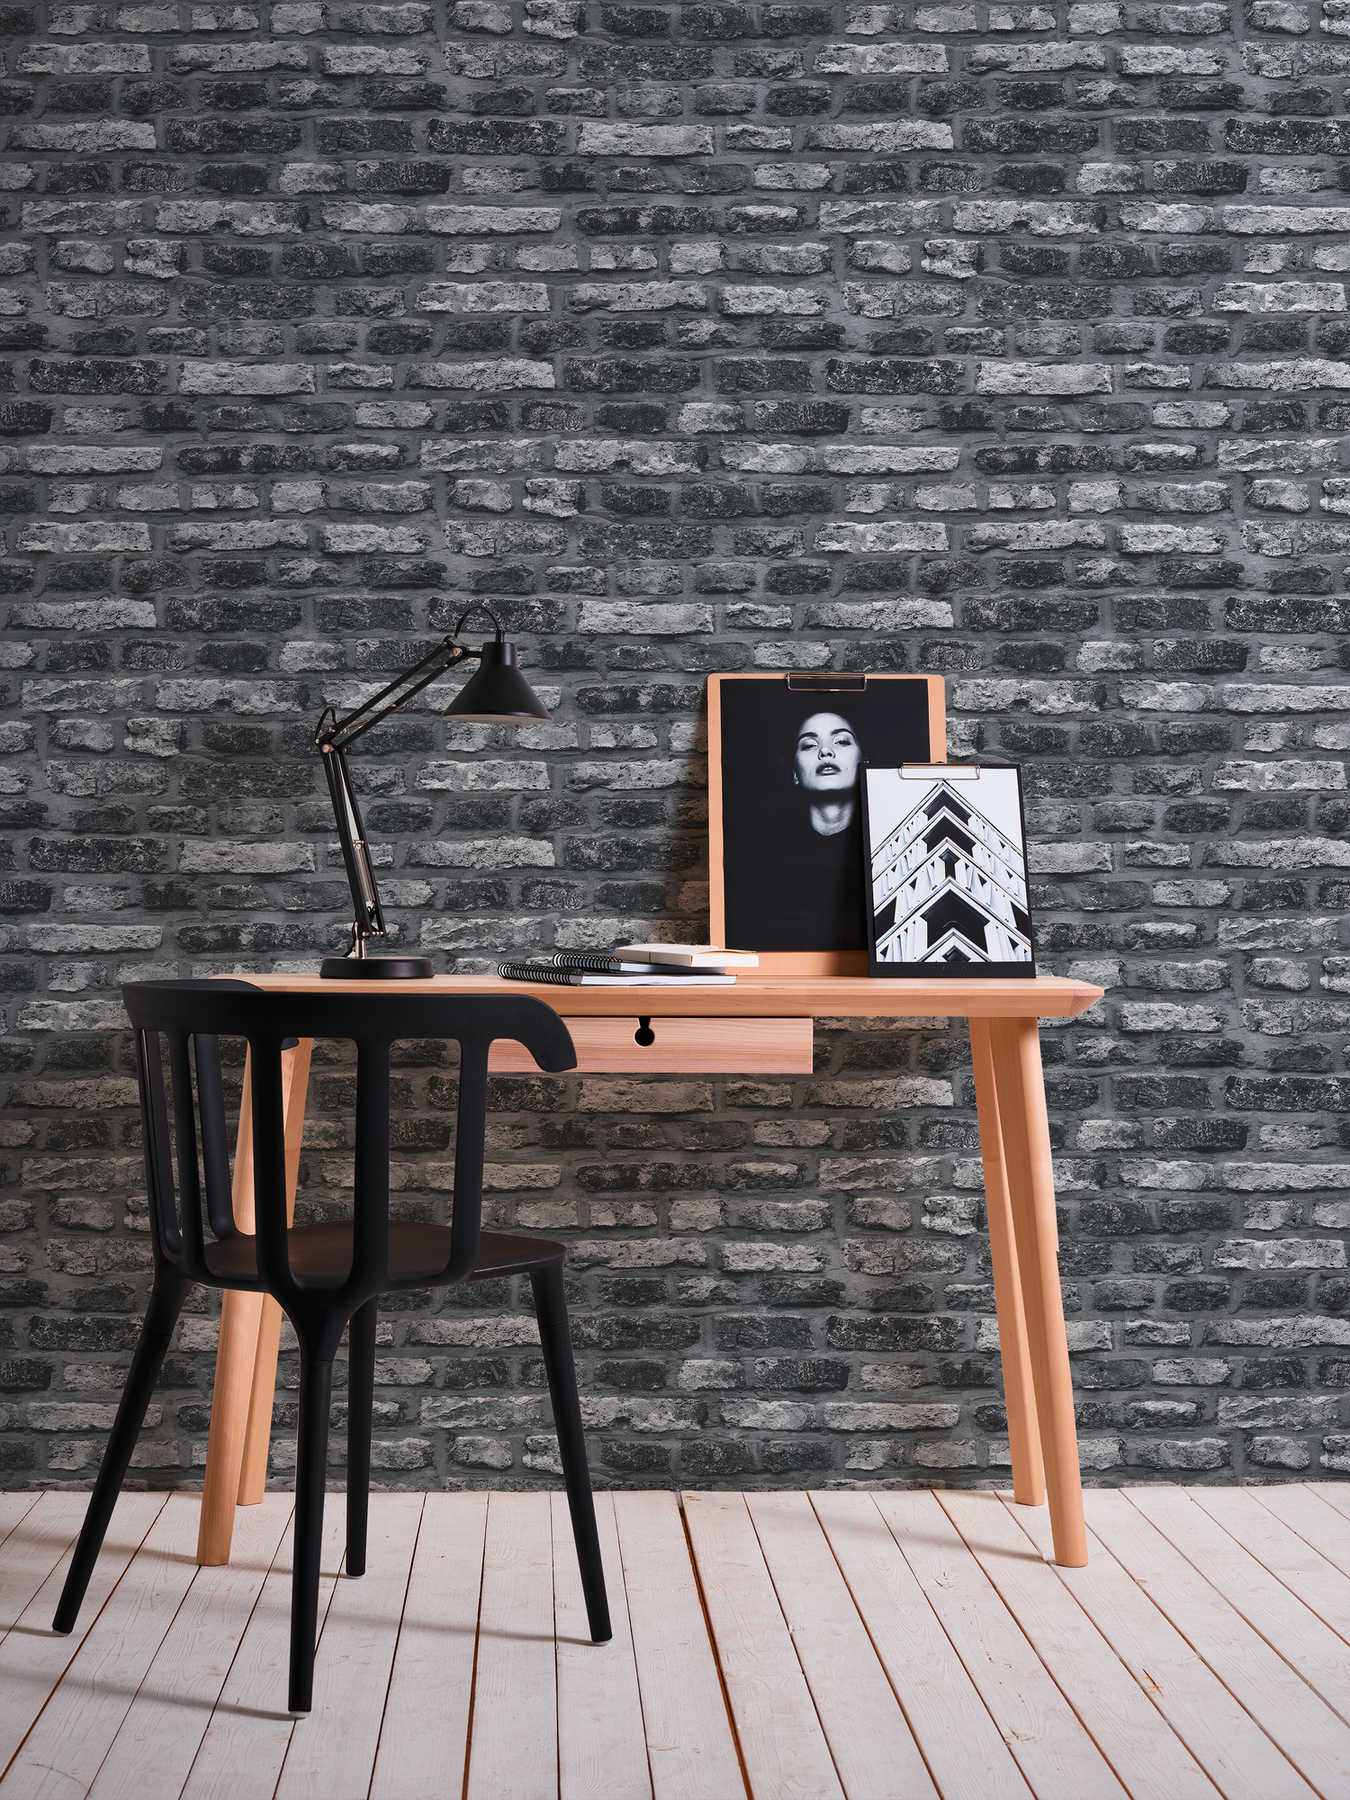             Papier peint intissé imitation pierre, mur de briques sombres - gris, noir
        